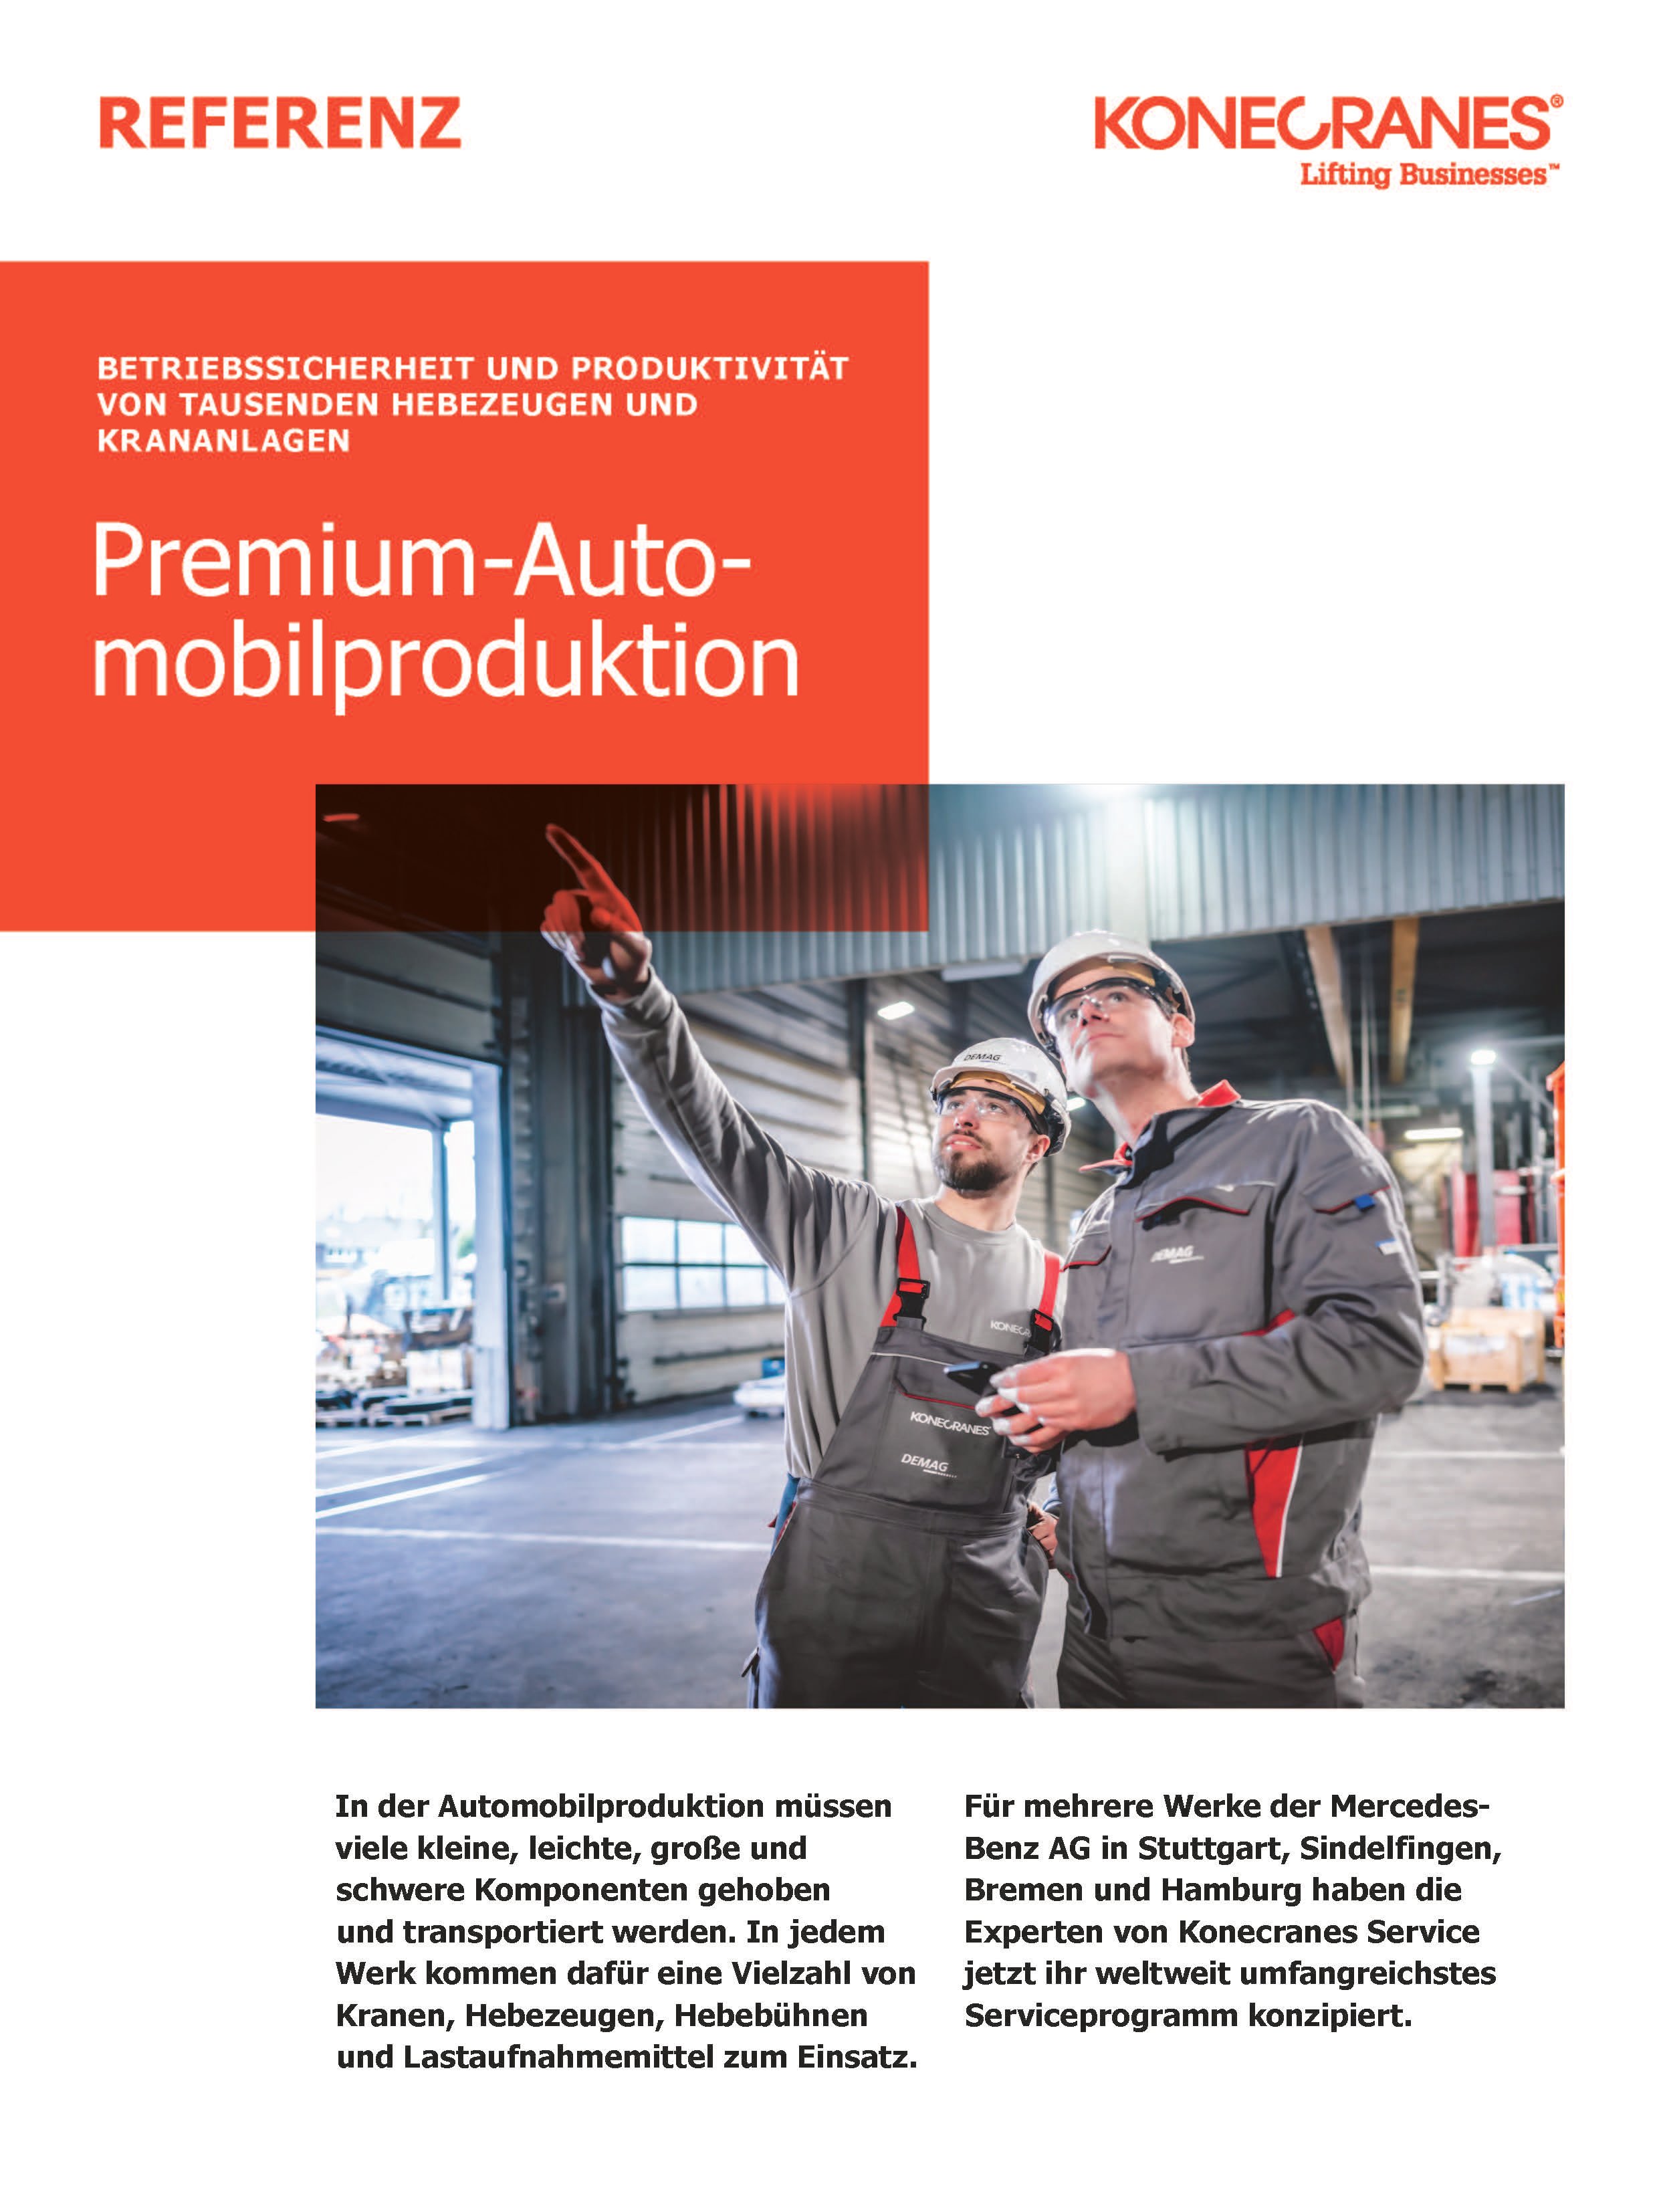 Premium Automobilproduktion